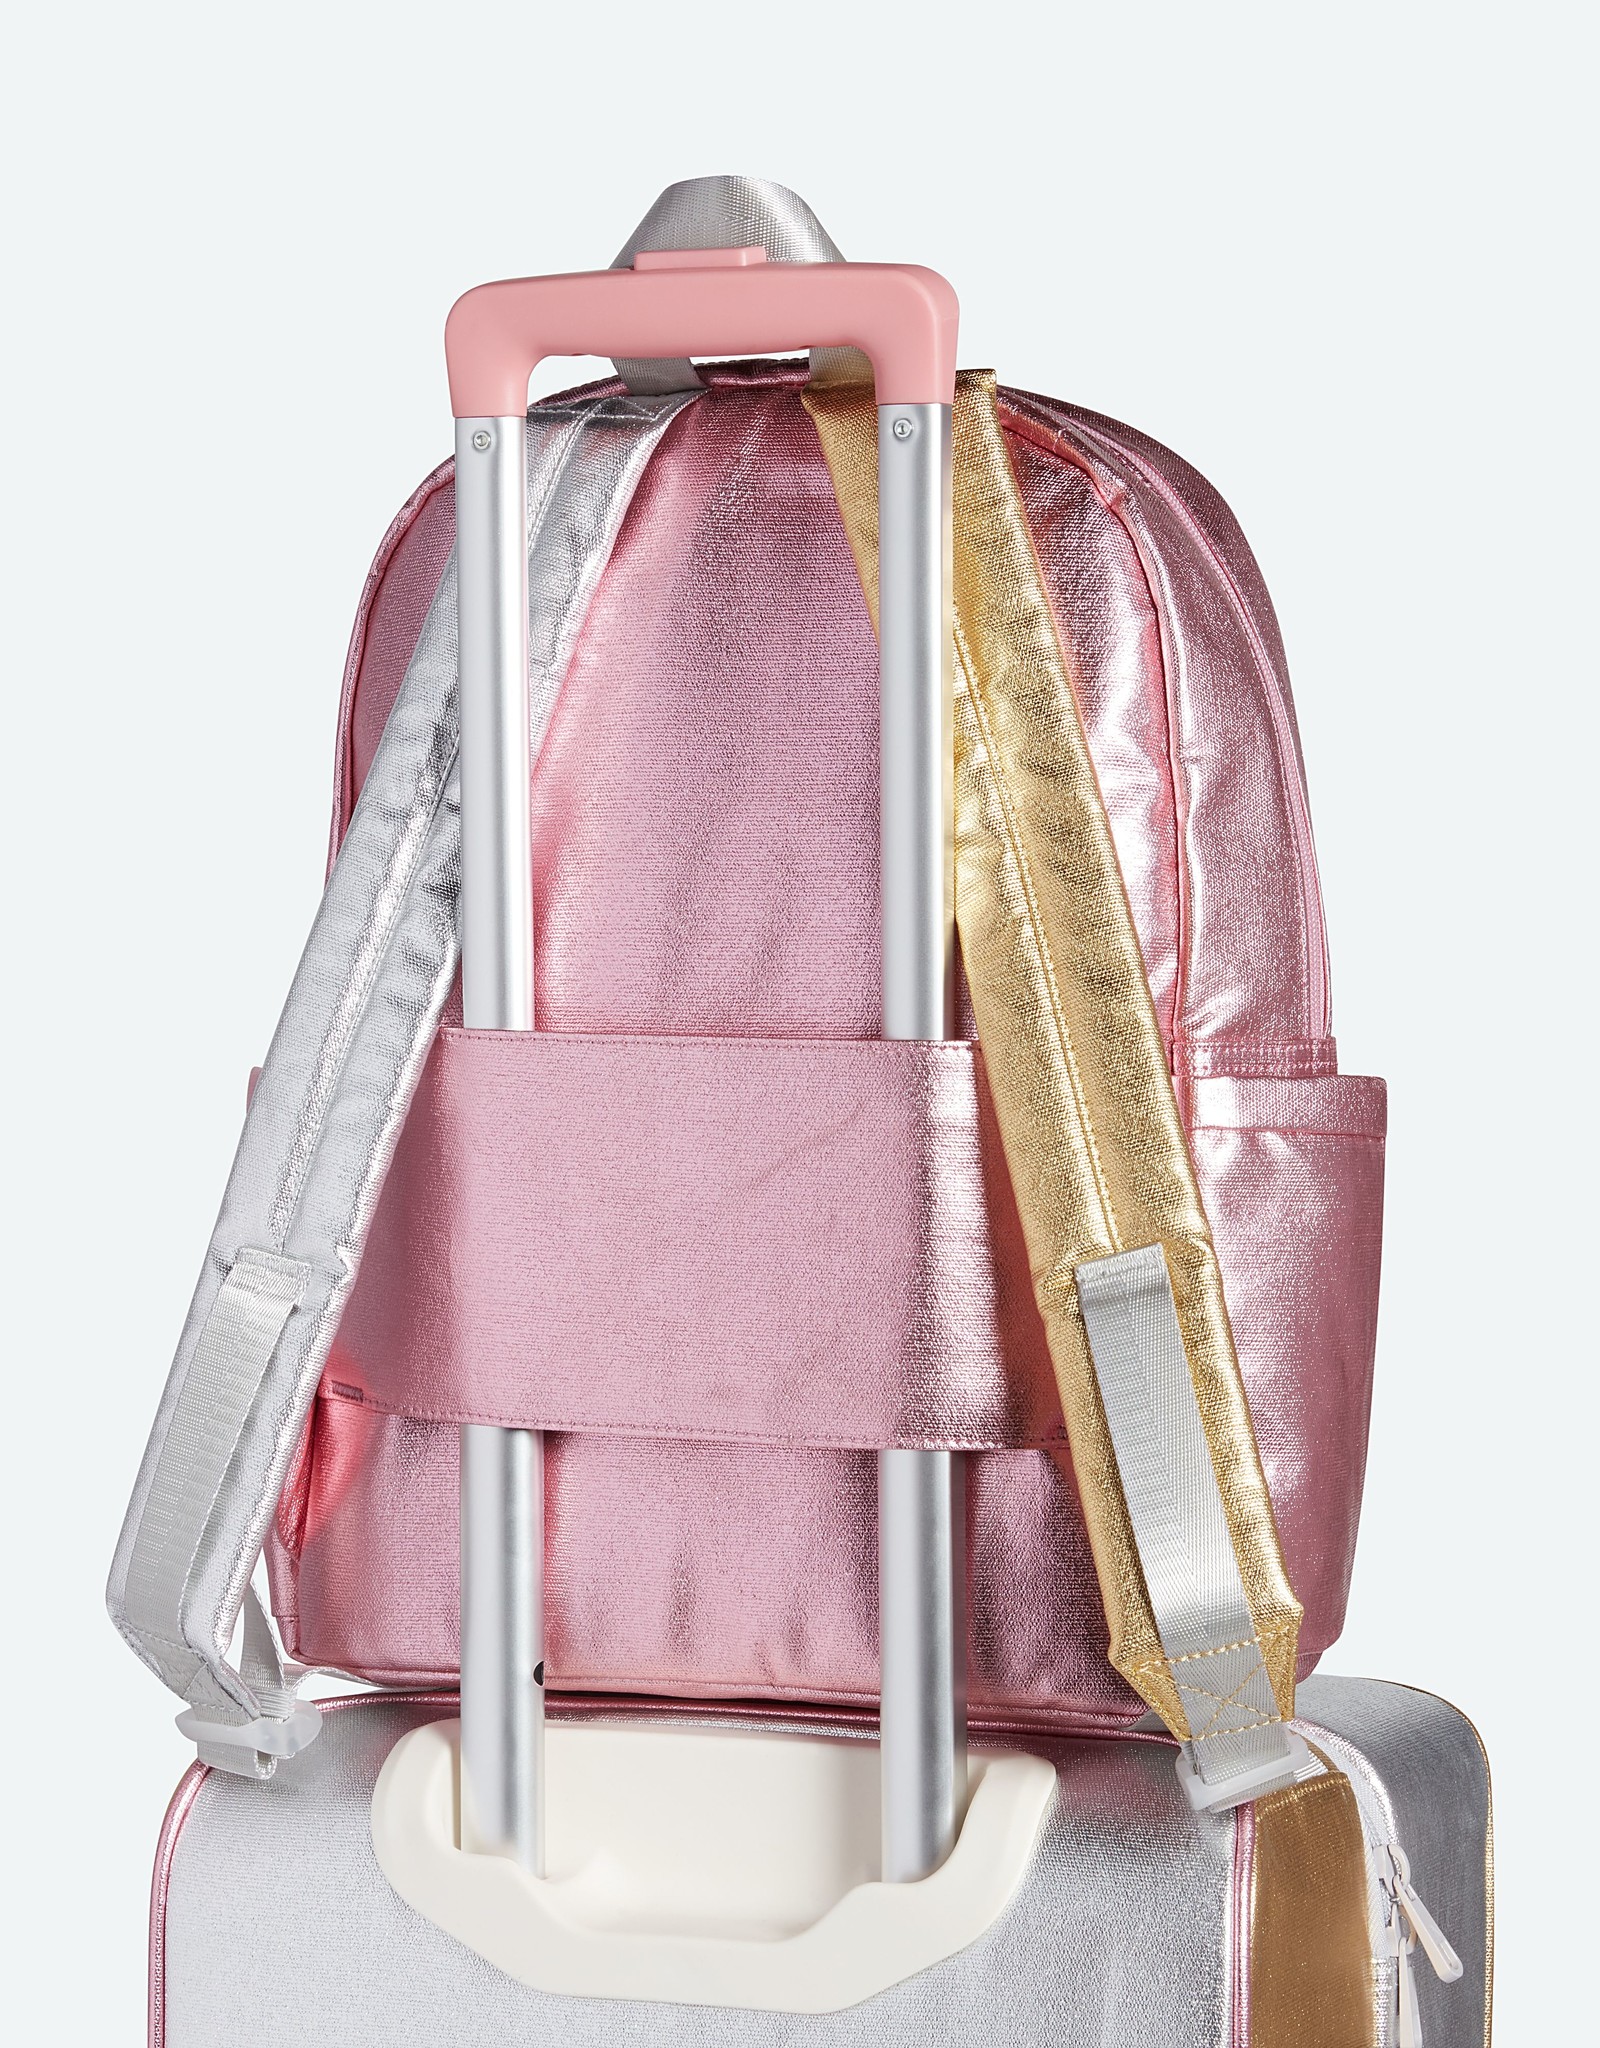 State Bags kane kids travel- pink/silver